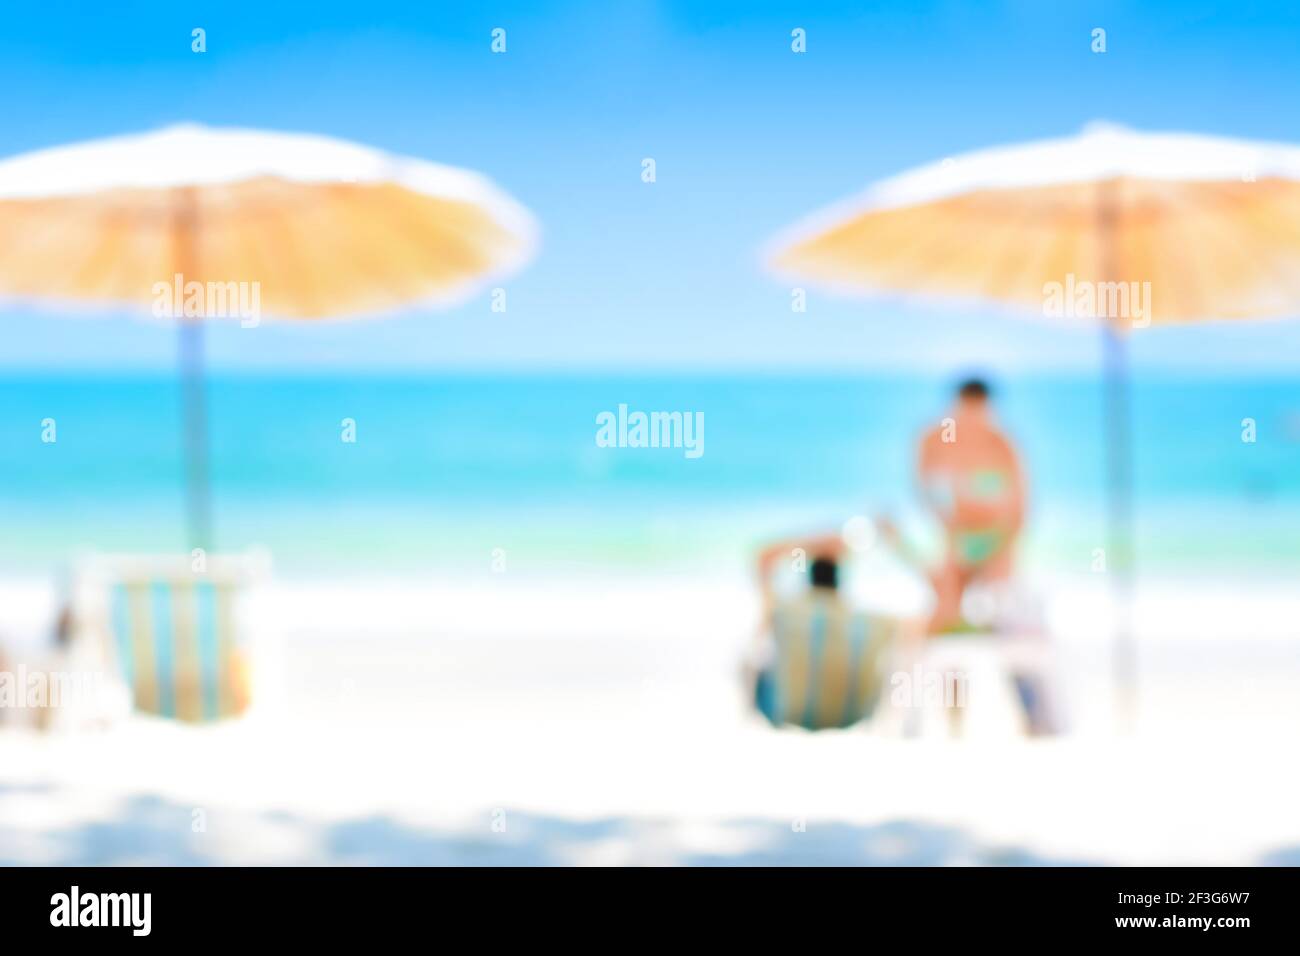 Verschwommenes blaues Meer und weißer Sandstrand mit Sonnenschirmen, Liegestühlen und einigen Menschen - Sommer- und Urlaubshintergrundkonzepte Stockfoto